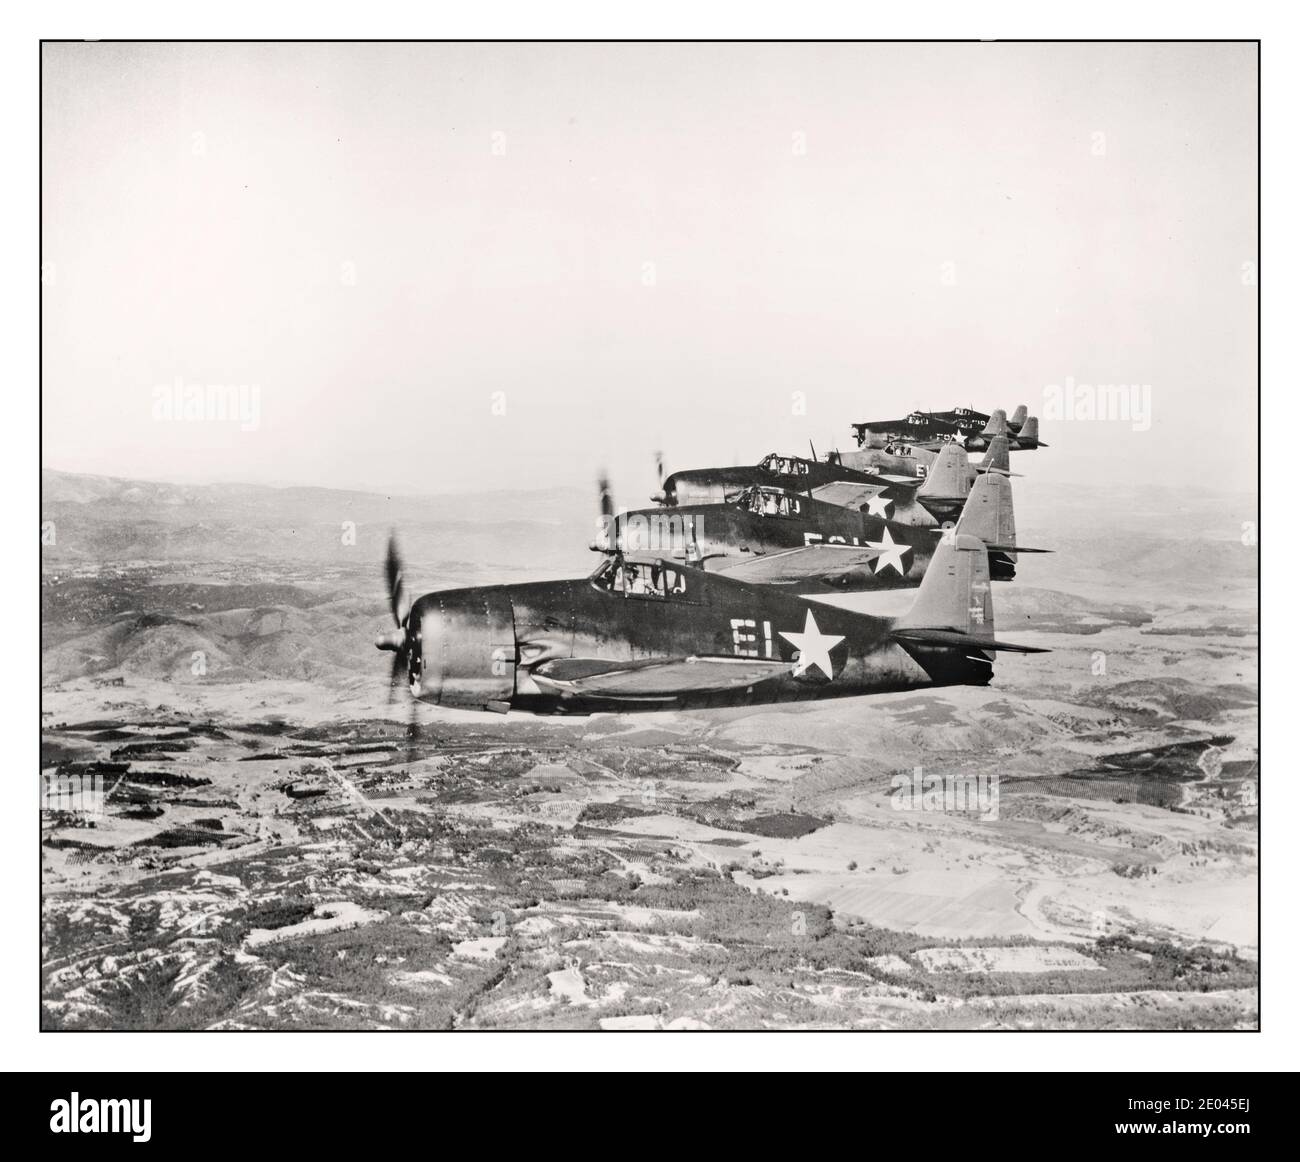 Archive WW2 USAF vue aérienne de sept avions Grumman Hellcat en vol créé / publié 1943. Avions--États-Unis--1940-1950 - Guerre mondiale, 1939-1945--matériel et fournitures--photographies aériennes américaines--1940-1950. Photographie officielle de la marine américaine Banque D'Images